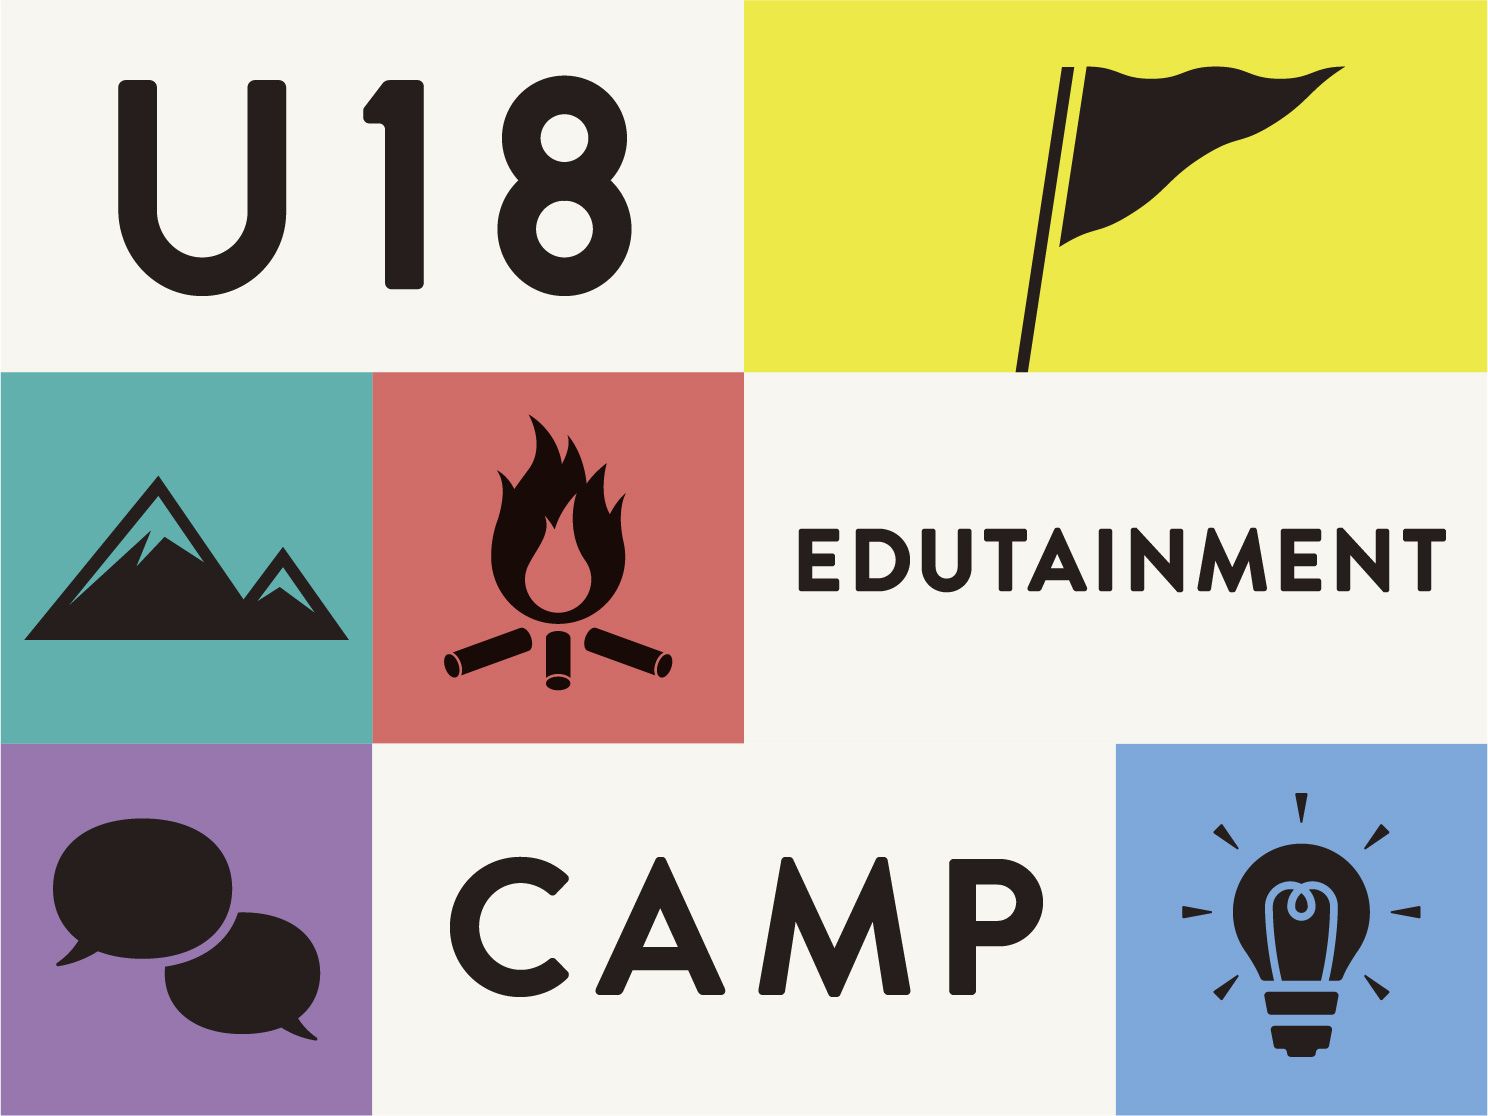 U18 EDUTAINMENT CAMP